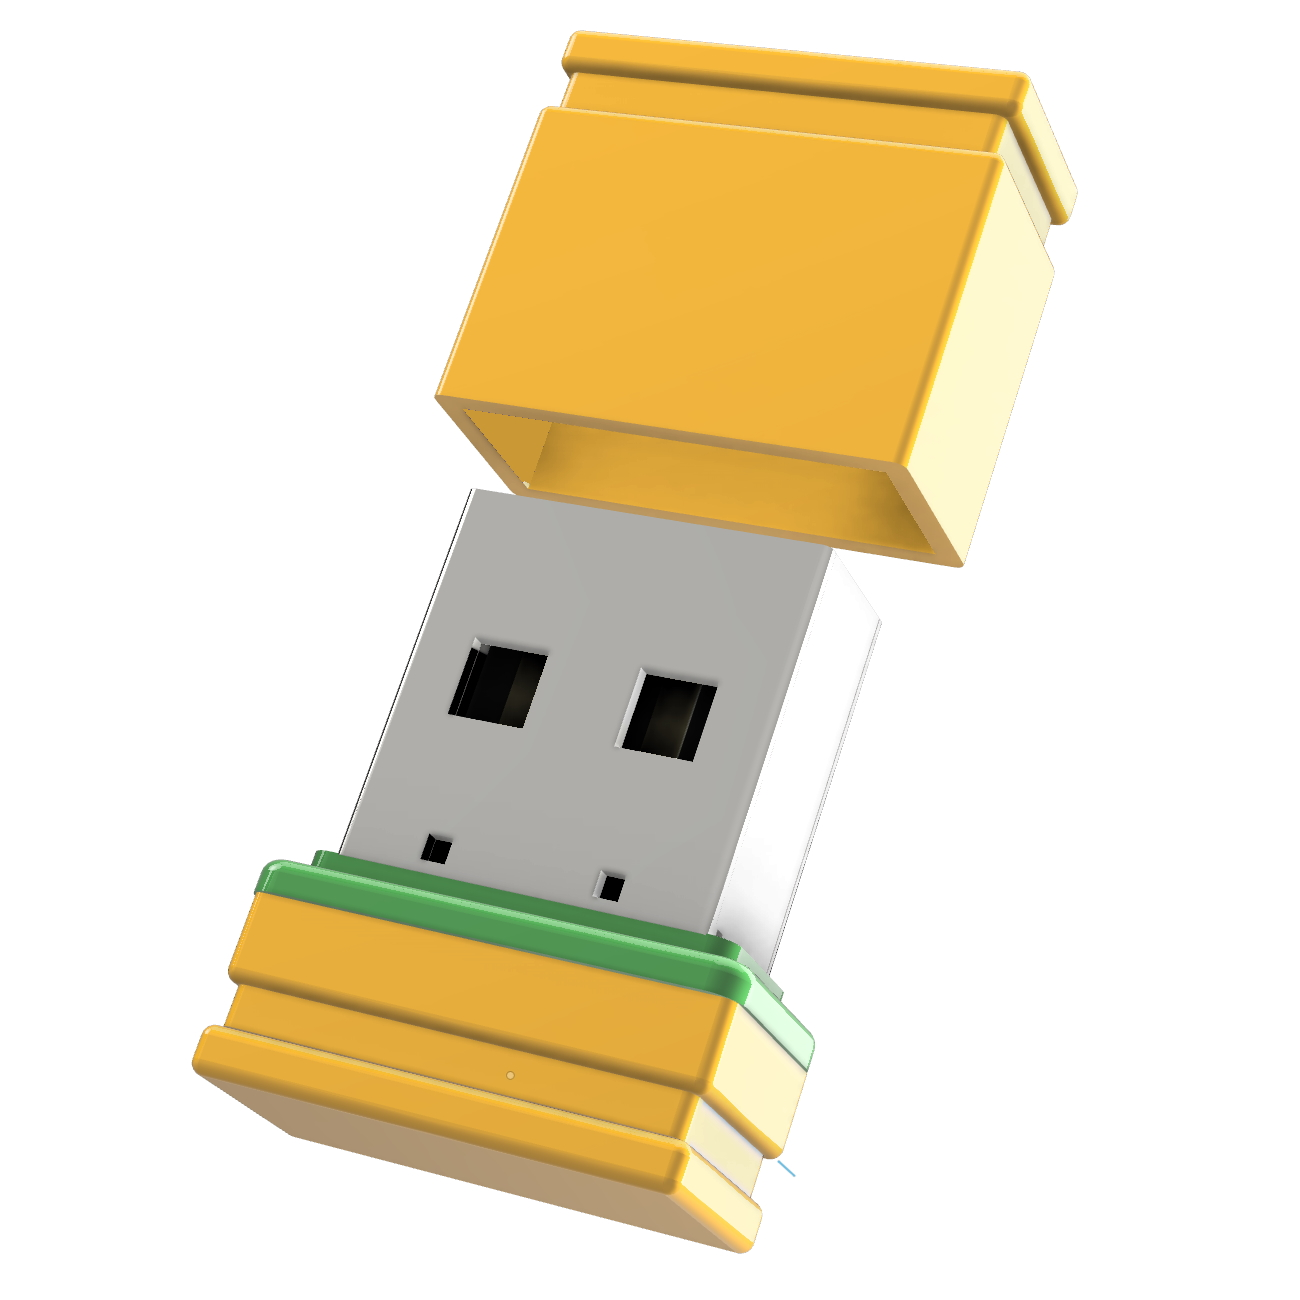 ®ULTRA P1 8 GB) Mini USB-Stick (Gelb/Grün, GERMANY USB